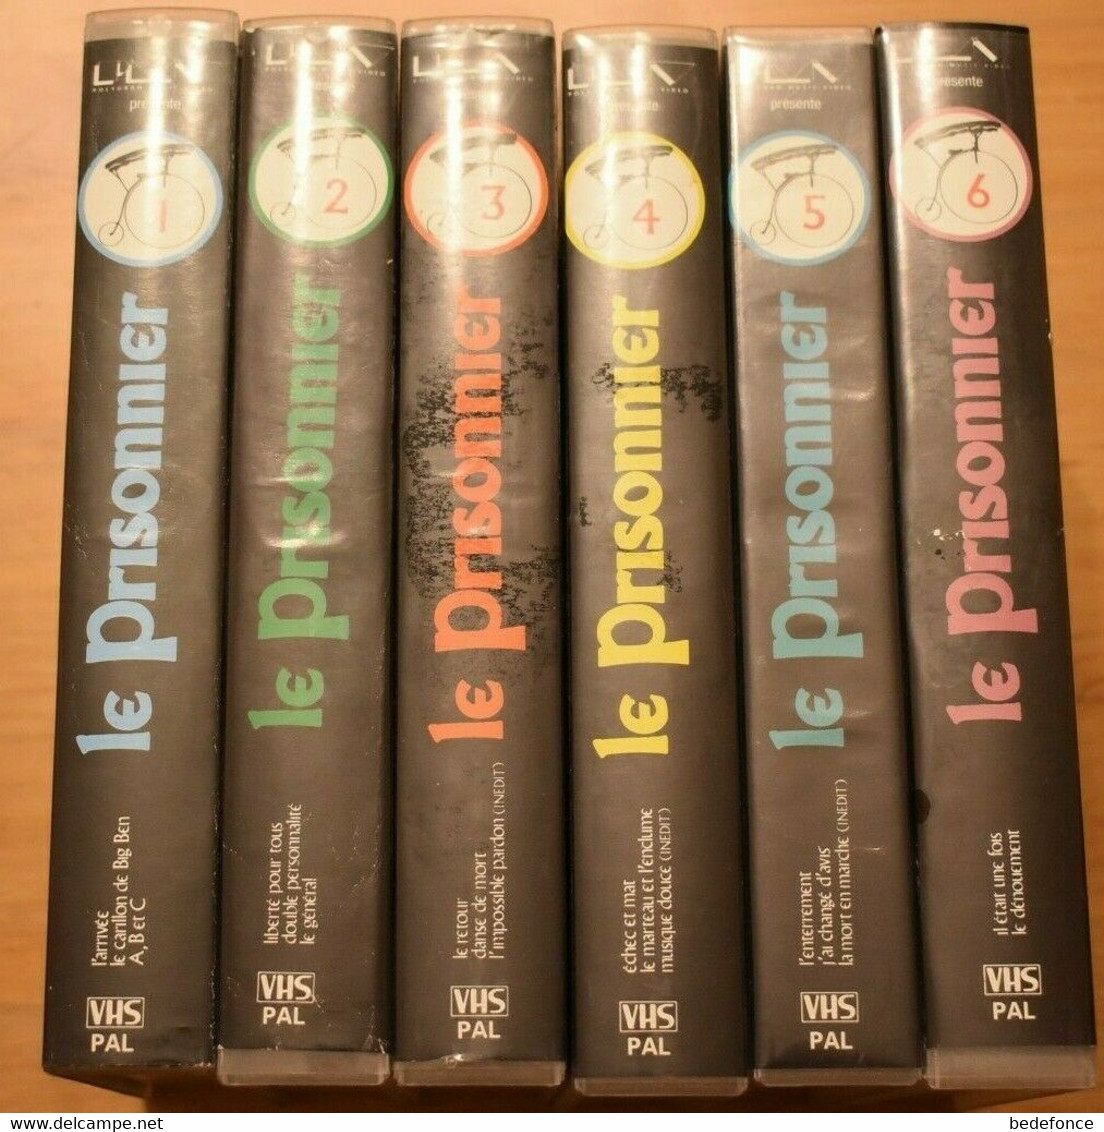 VHS - Le Prisonnier - Série Complète : 6 Cassettes - Avec Patrick McGoohan - Fantascienza E Fanstasy